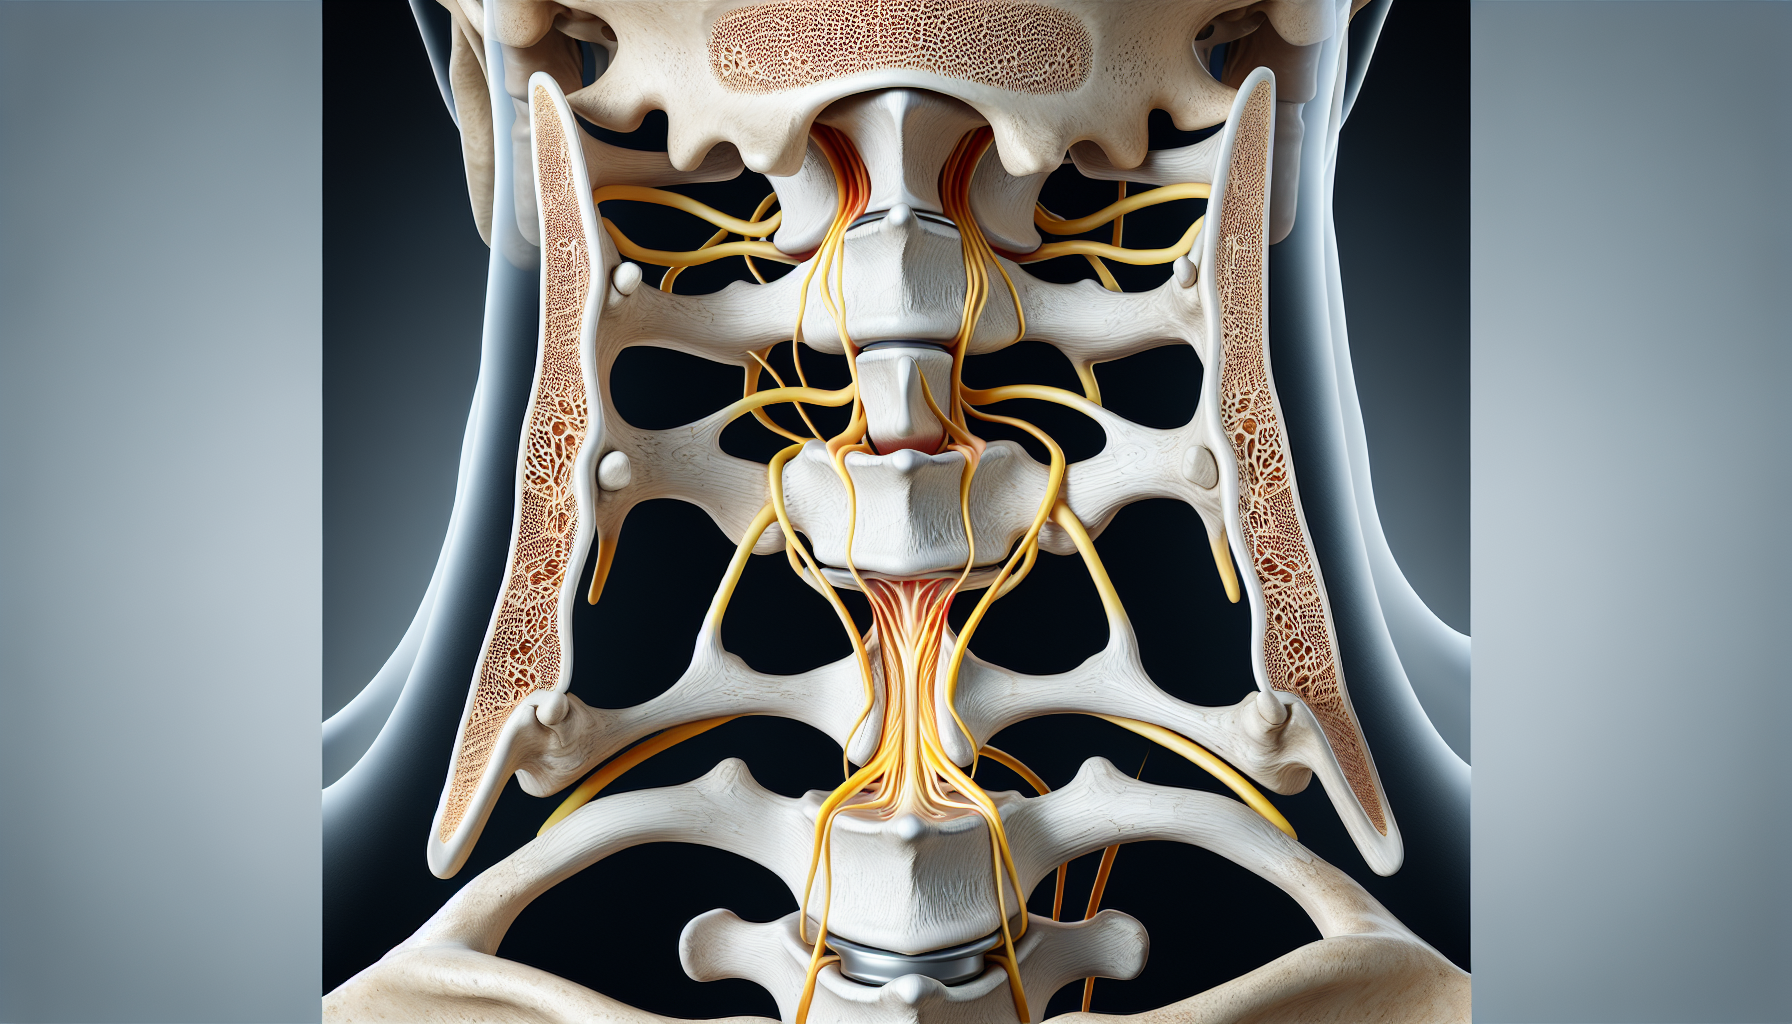 Illustration of cervical spine with bone spurs